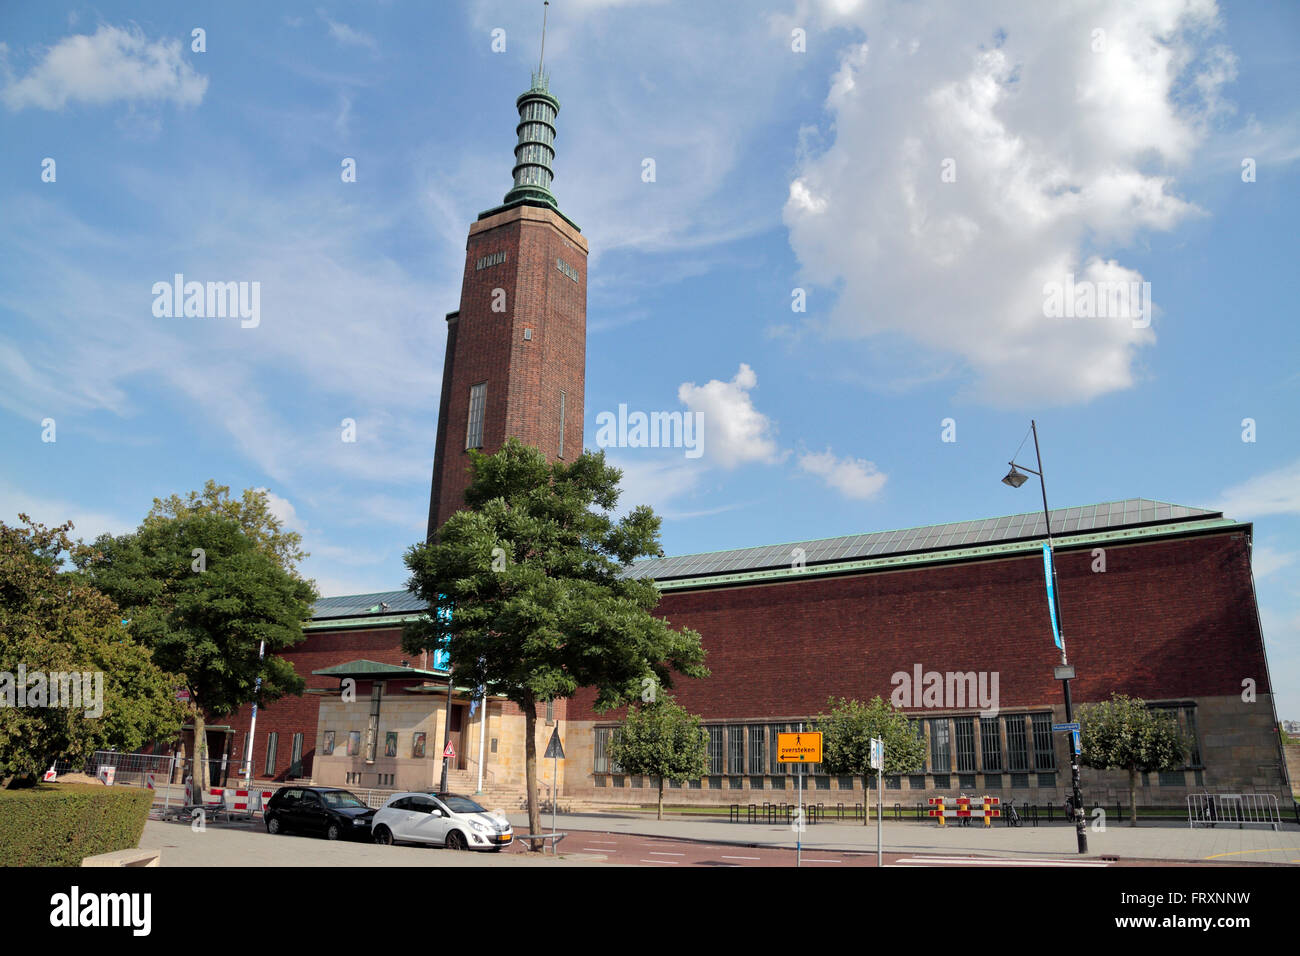 Museum Boijmans Van Beuningen in Rotterdam, Netherlands Stock Photo - Alamy